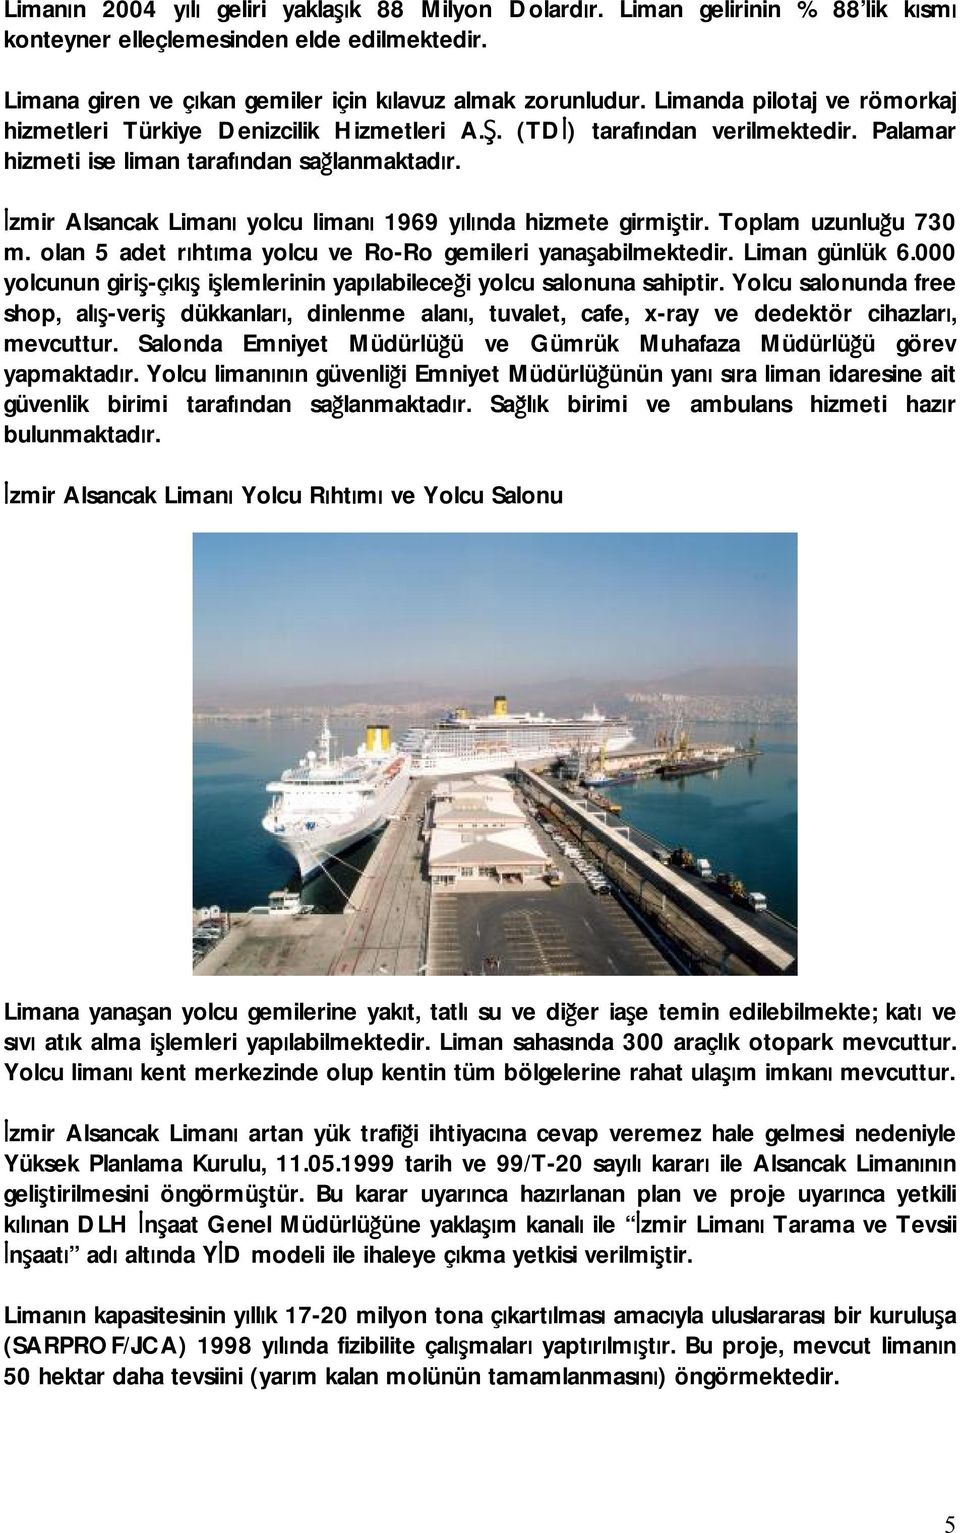 İzmir Alsancak Limanı yolcu limanı 1969 yılında hizmete girmiştir. Toplam uzunluğu 730 m. olan 5 adet rıhtıma yolcu ve Ro-Ro gemileri yanaşabilmektedir. Liman günlük 6.